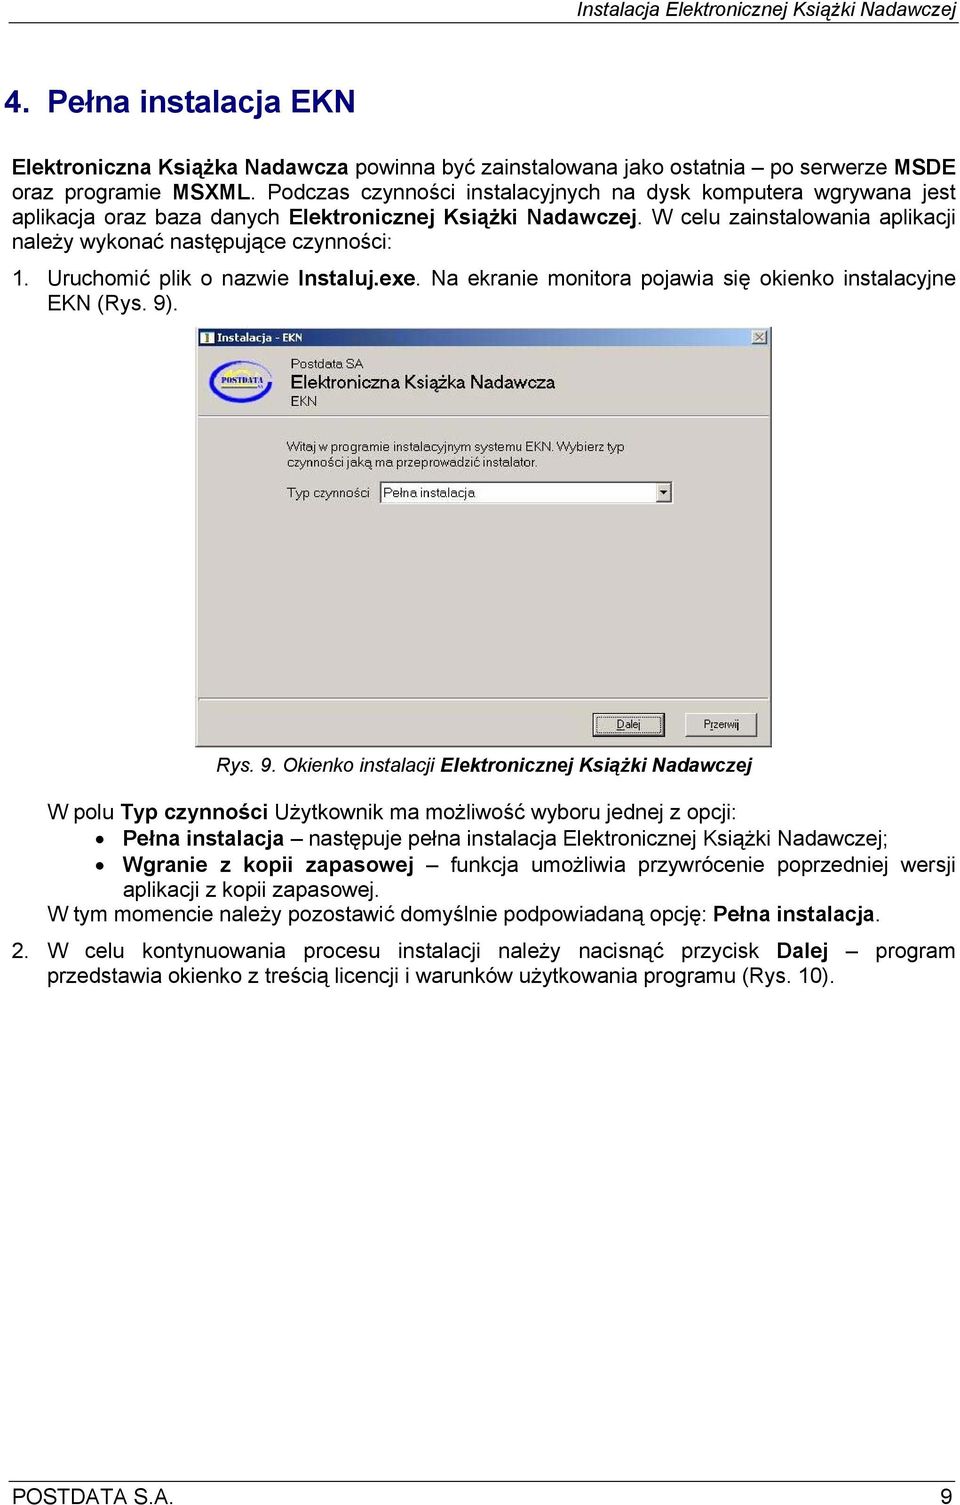 Uruchomić plik o nazwie Instaluj.exe. Na ekranie monitora pojawia się okienko instalacyjne EKN (Rys. 9)